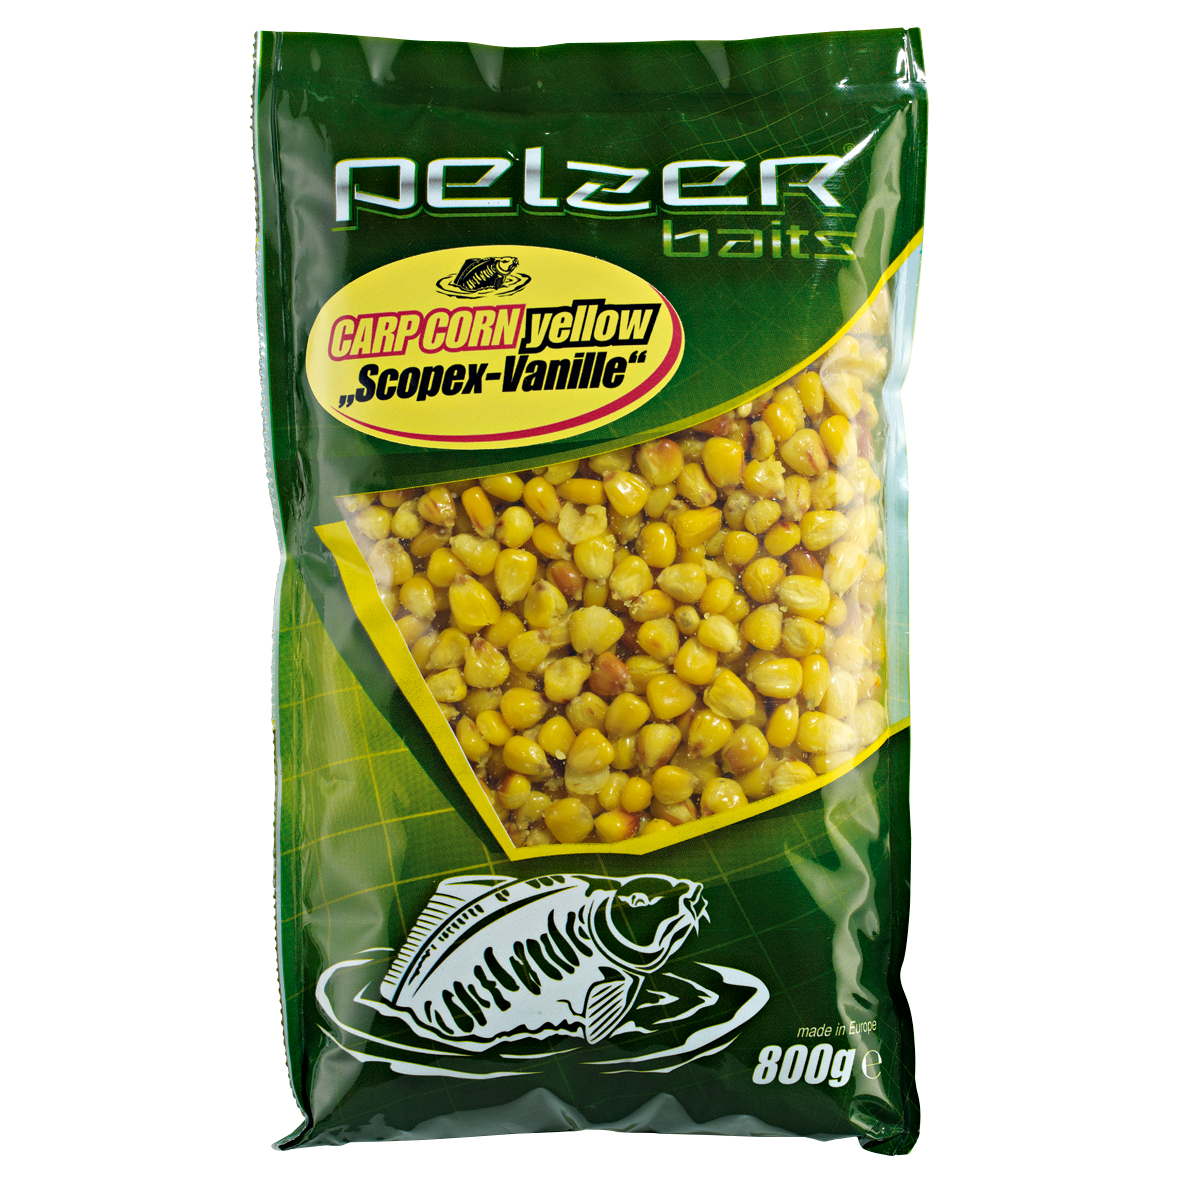 Pelzer Particle Baits Carp Corn Angel Corn (Scopex/Vanilla) at low prices